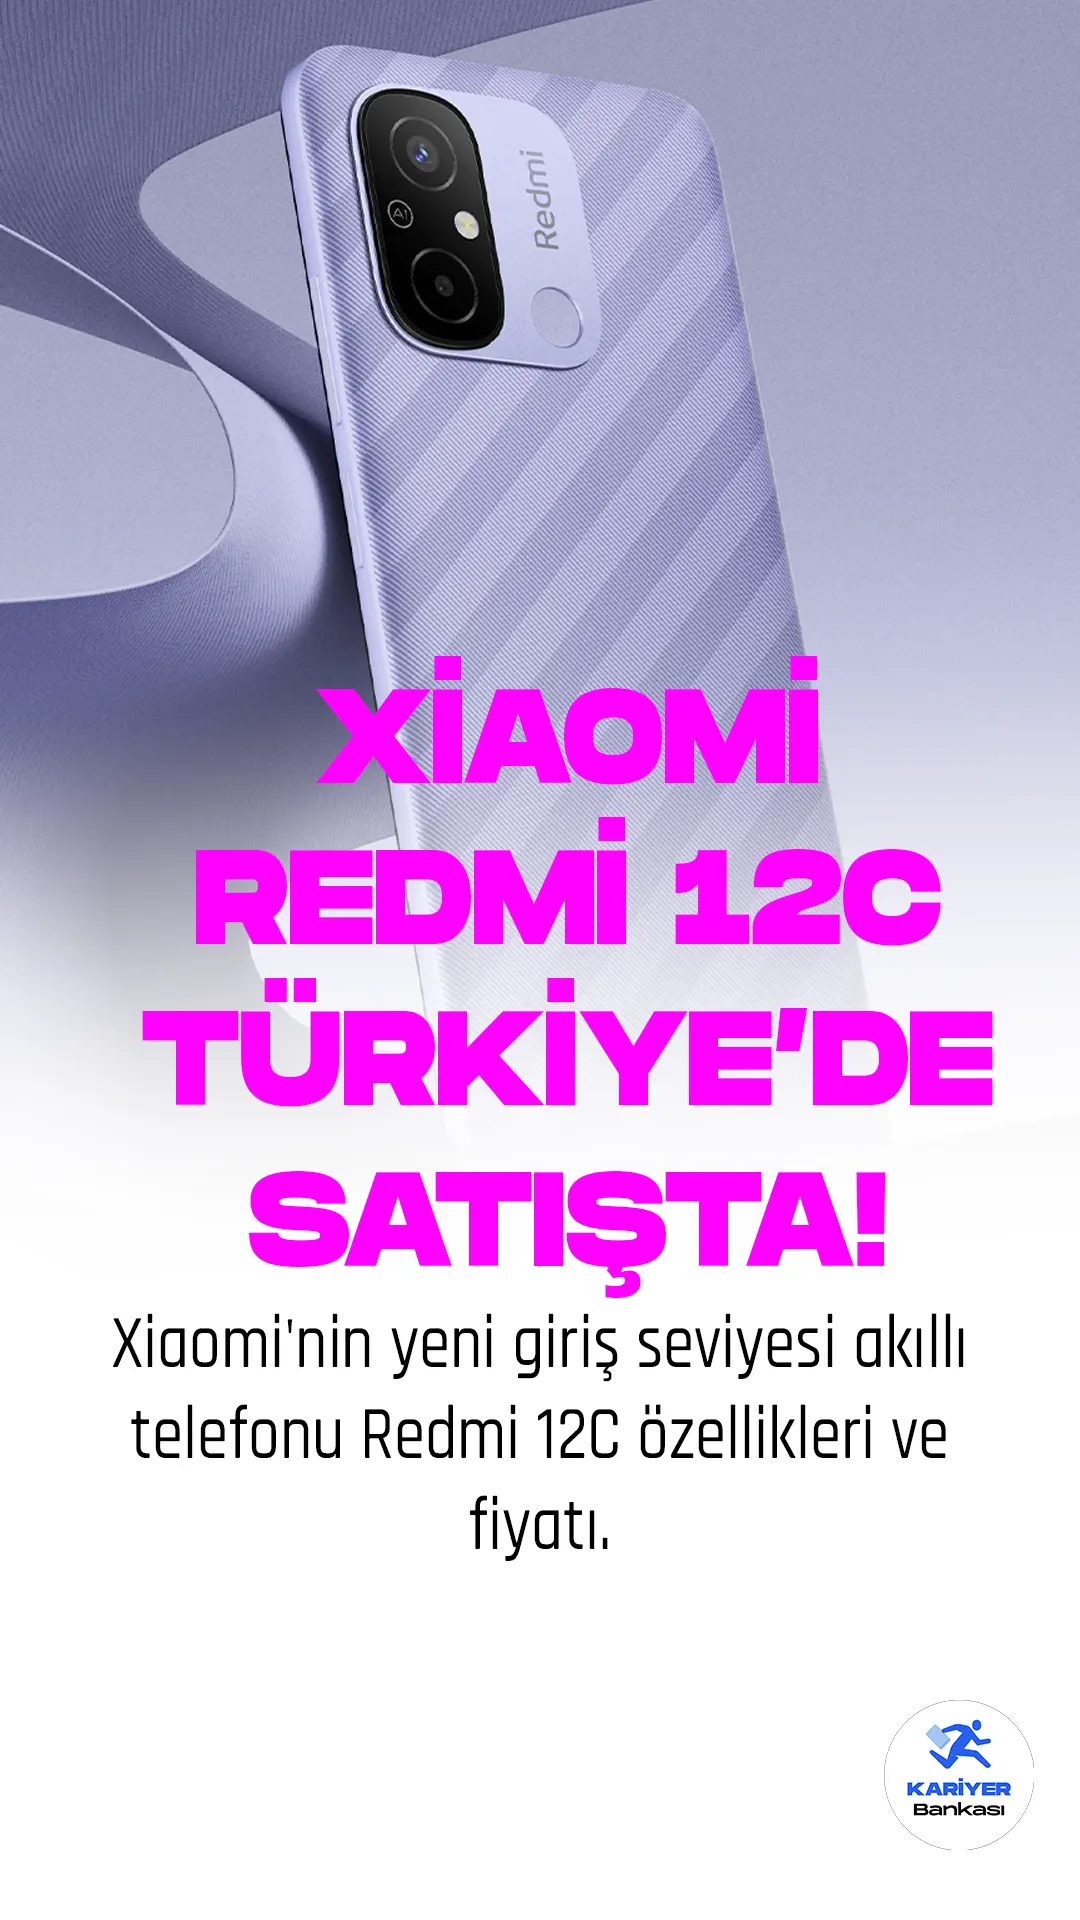 Xiaomi'nin yeni giriş seviyesi akıllı telefonu Redmi 12C Türkiye'de satışta! MediaTek Helio G85 işlemcisi ve 5000mAh bataryasıyla öne çıkıyor. Fiyatı 4.899 TL'den başlıyor.